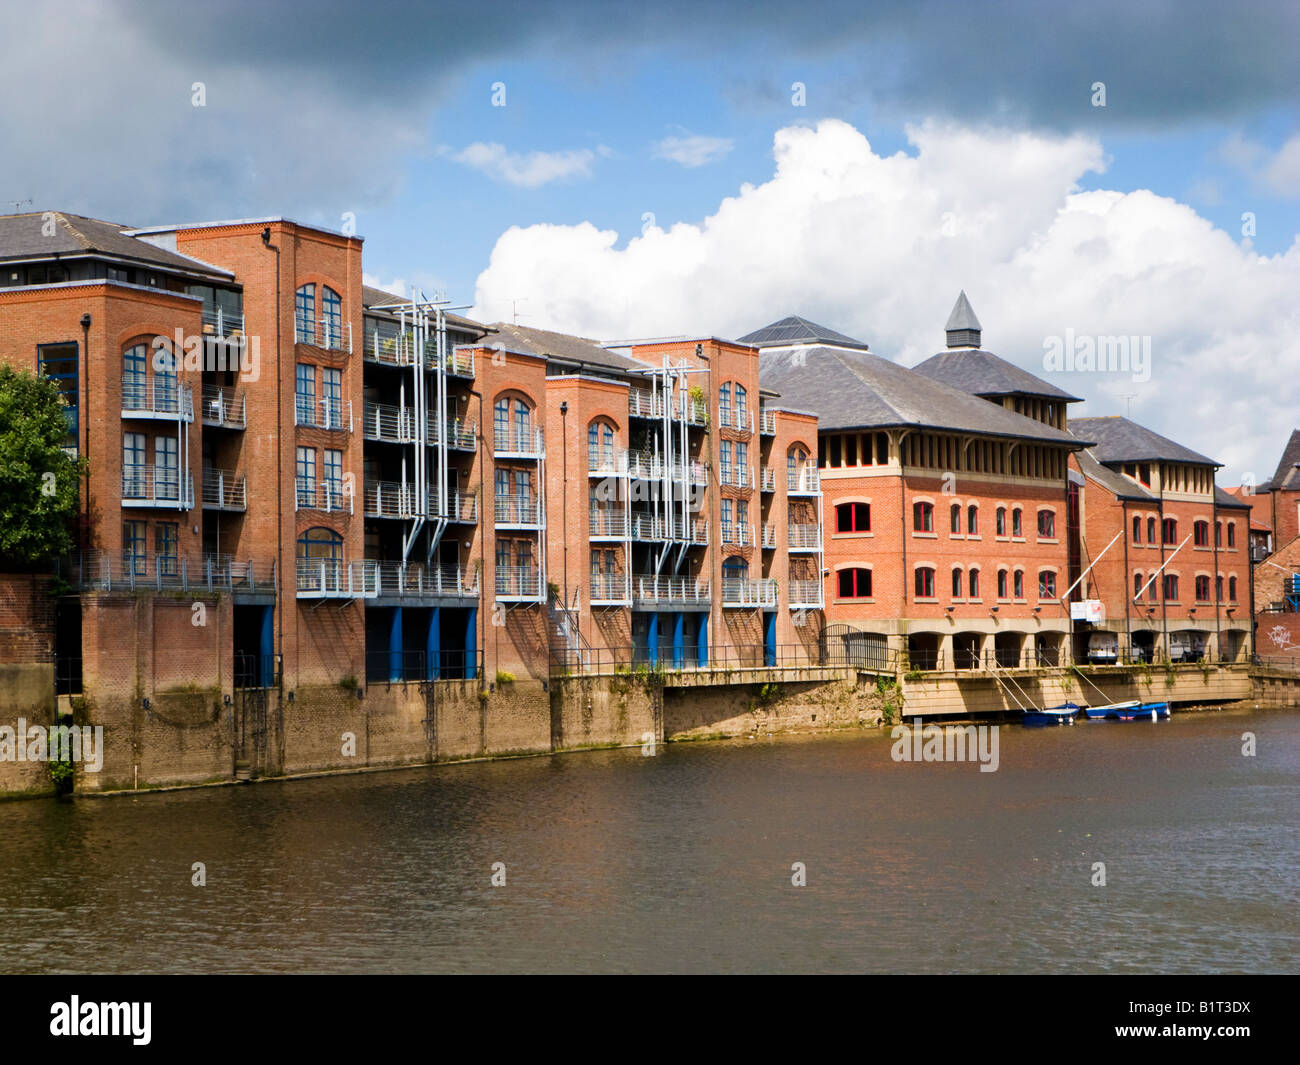 Almacenes reurbanizado hecha en Riverside pisos apartamentos en el río Ouse en el centro de York, Inglaterra, Reino Unido. Foto de stock